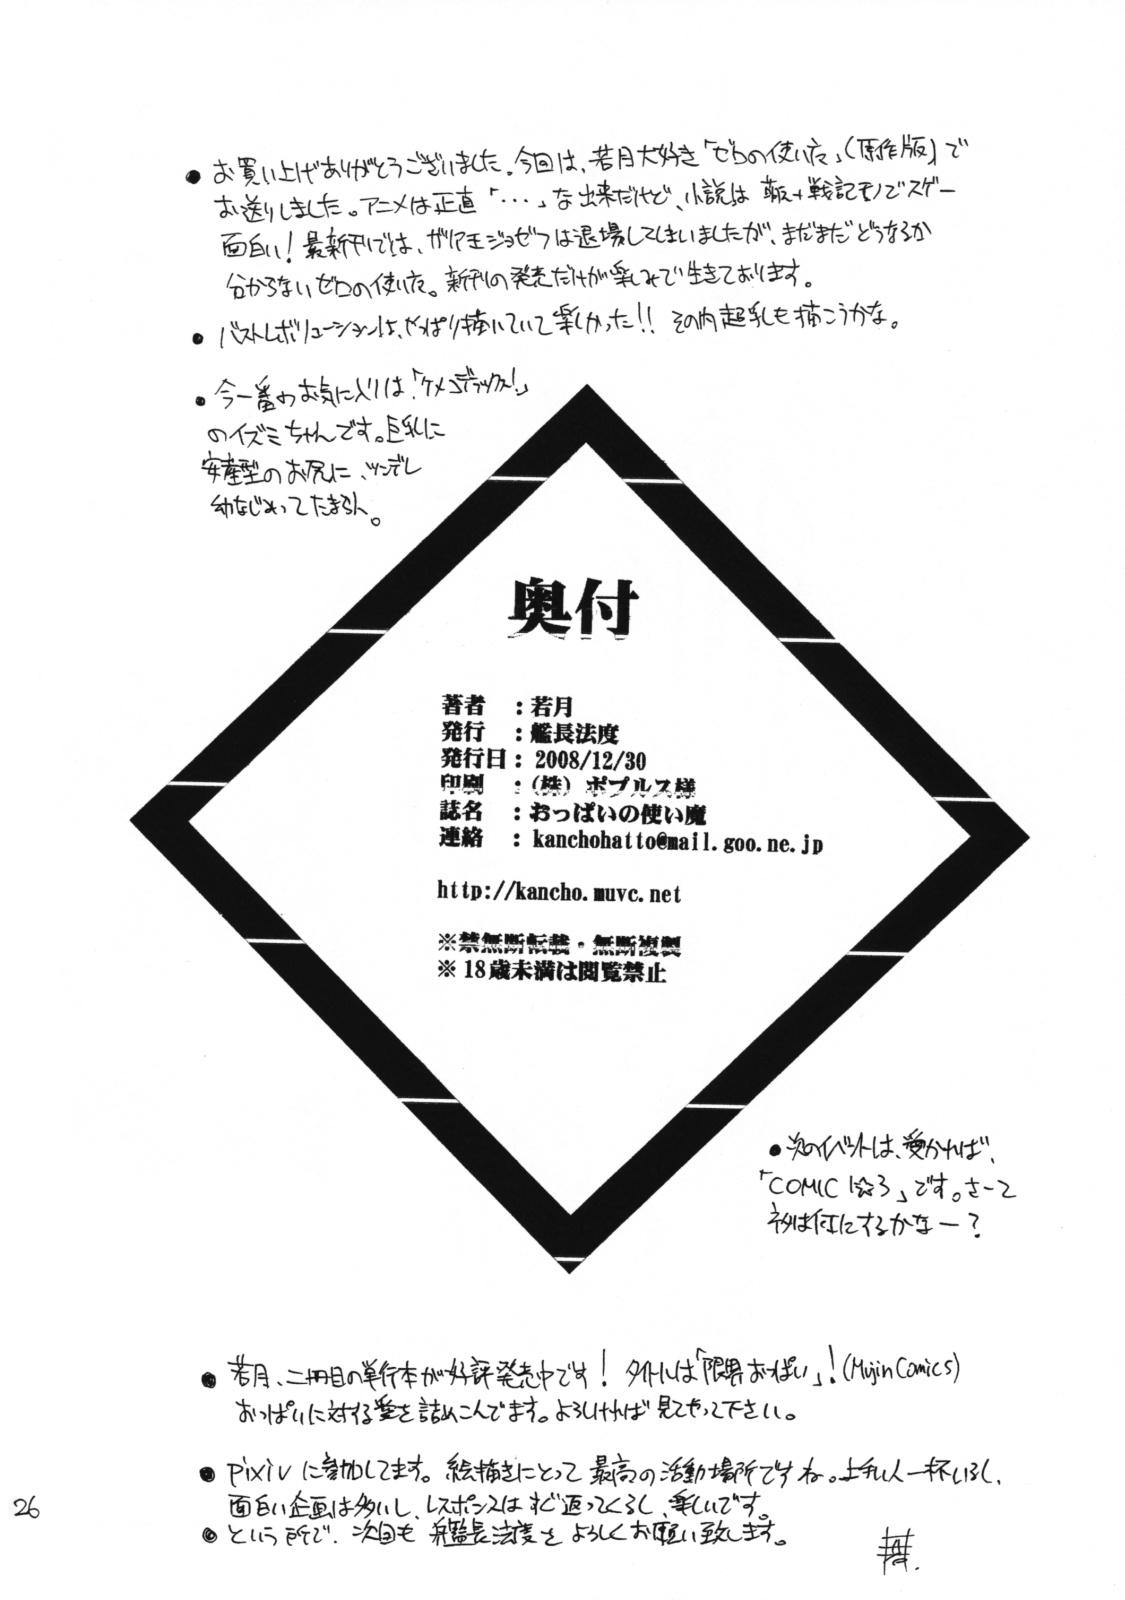 Madura Oppai no Tsukaima - Zero no tsukaima Ejaculations - Page 25